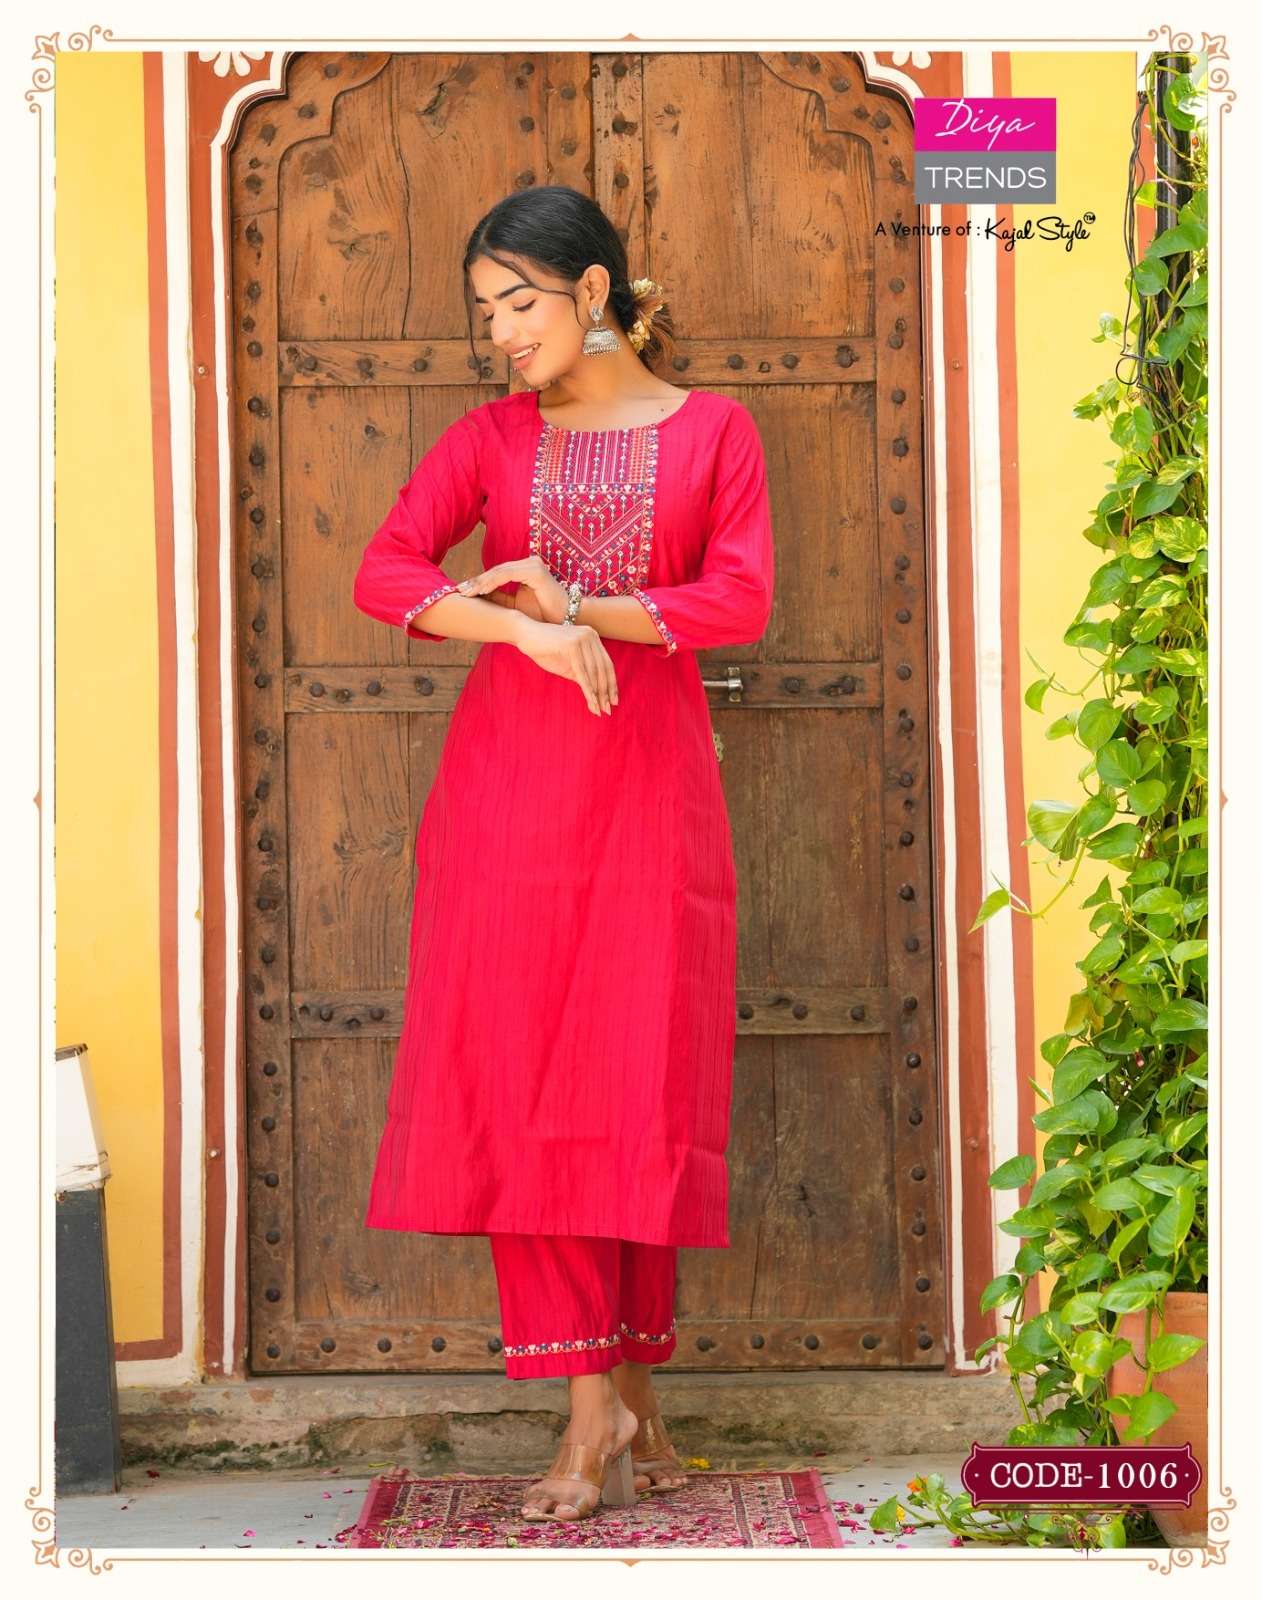 Satrangi Vol 1 Buy Diya Trends Online Wholesaler Latest Collection Kurta Pant Set